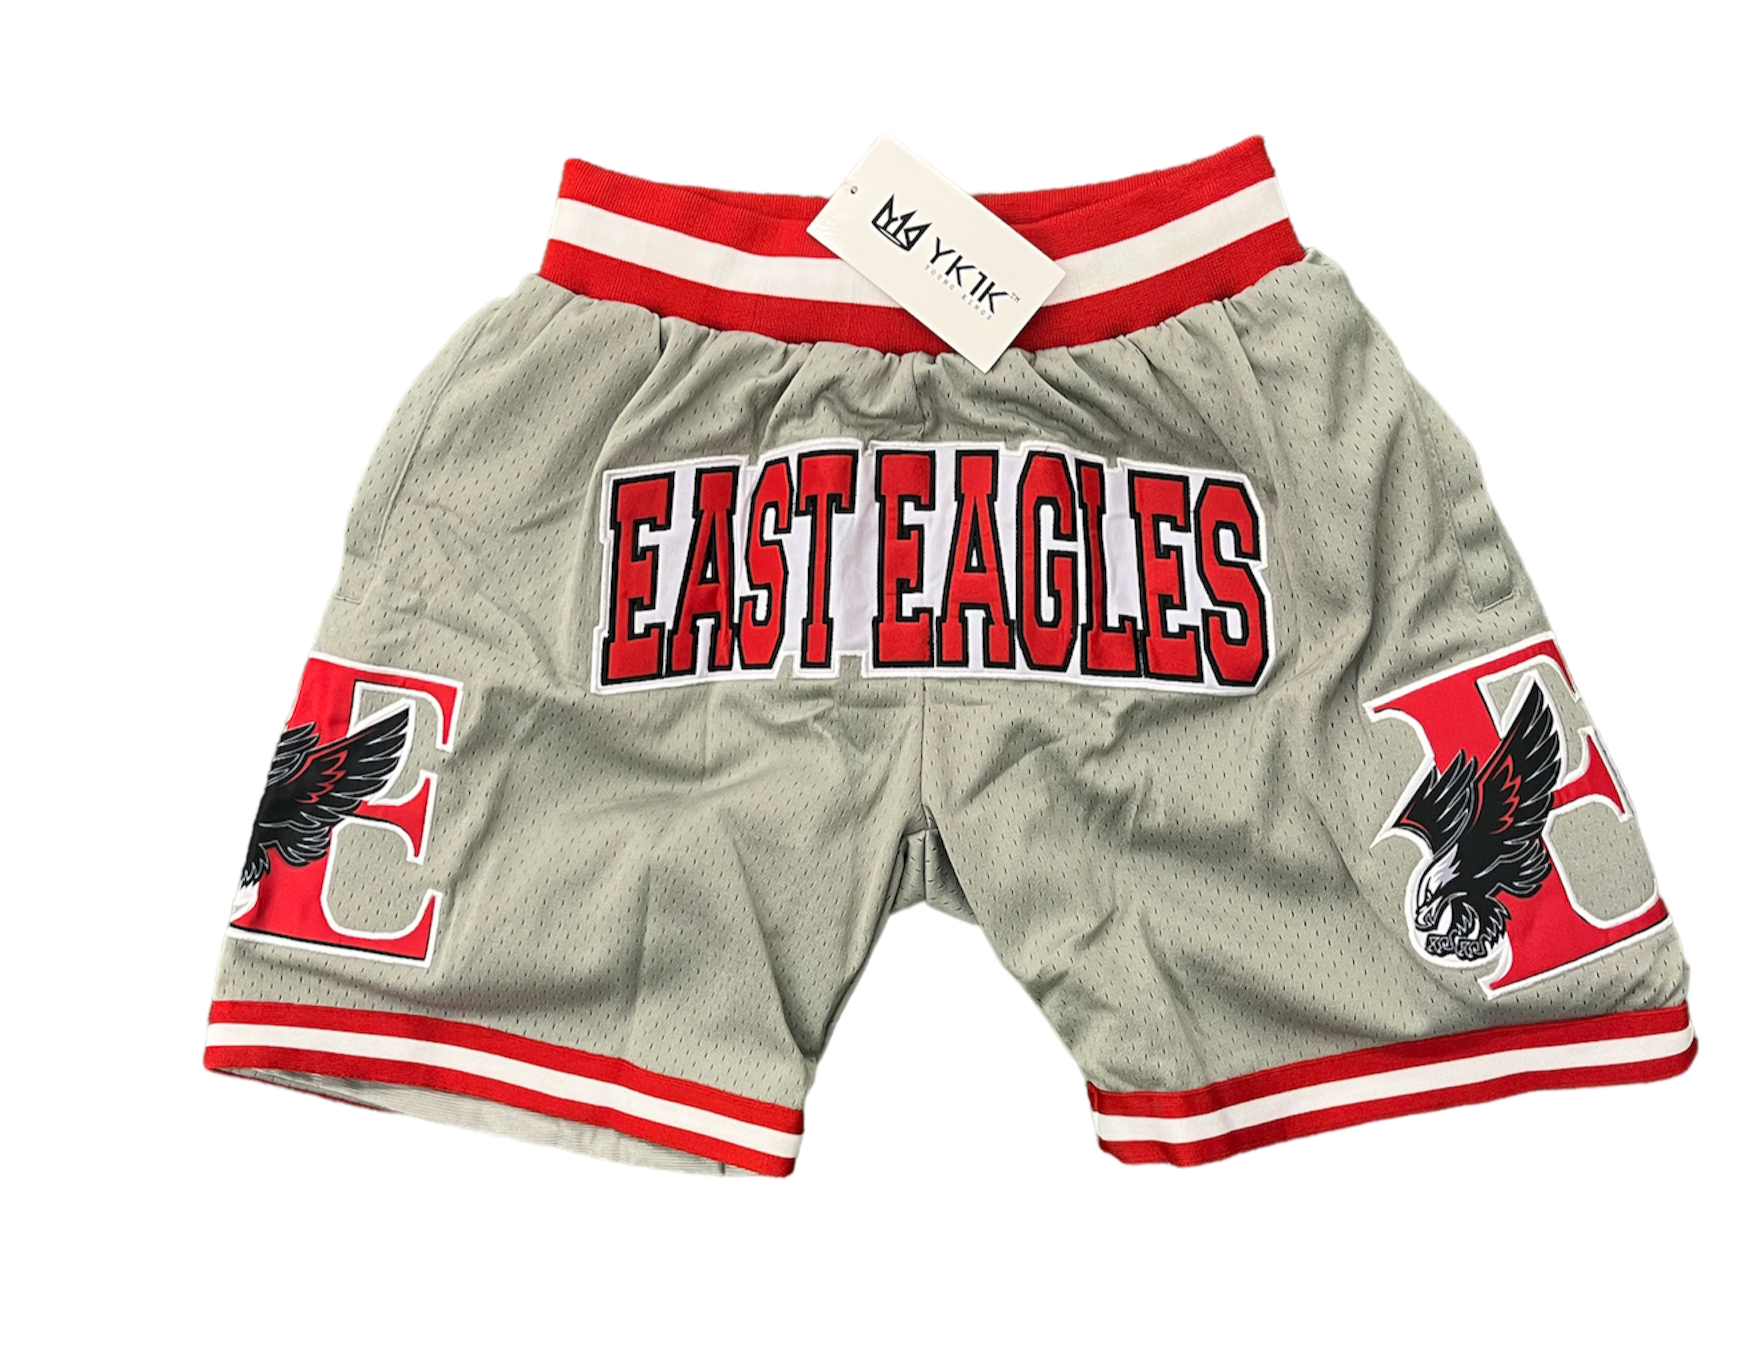 EAST EAGLES Basketball Shorts